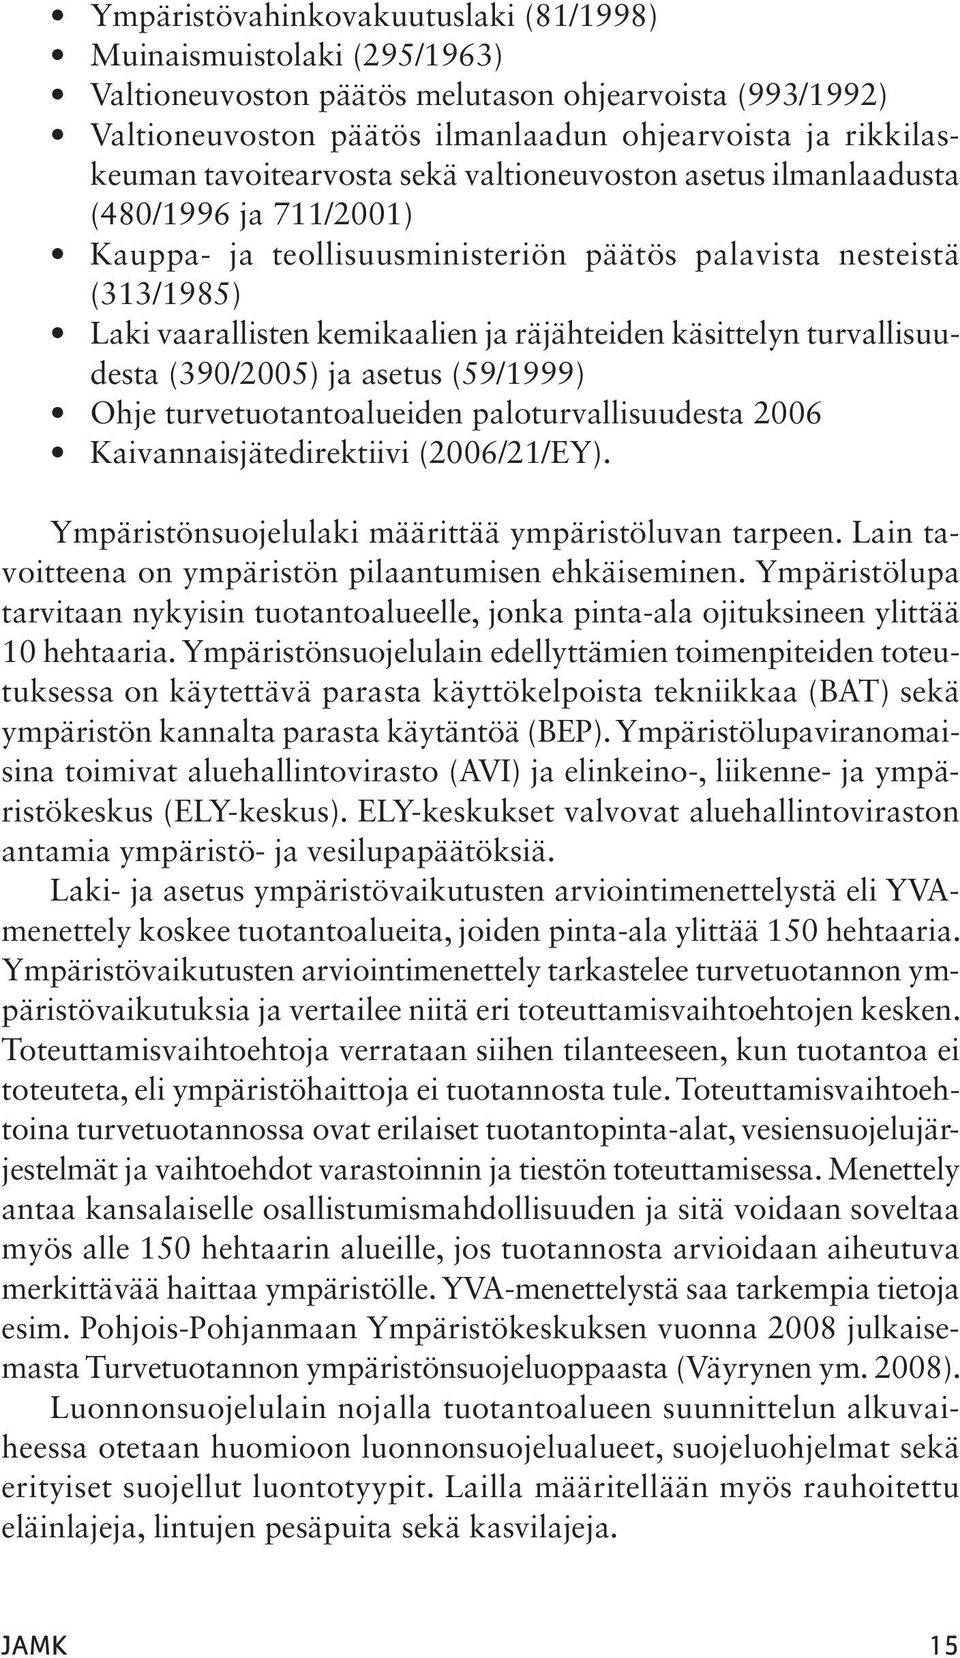 käsittelyn turvallisuudesta (390/2005) ja asetus (59/1999) Ohje turvetuotantoalueiden paloturvallisuudesta 2006 Kaivannaisjätedirektiivi (2006/21/EY).